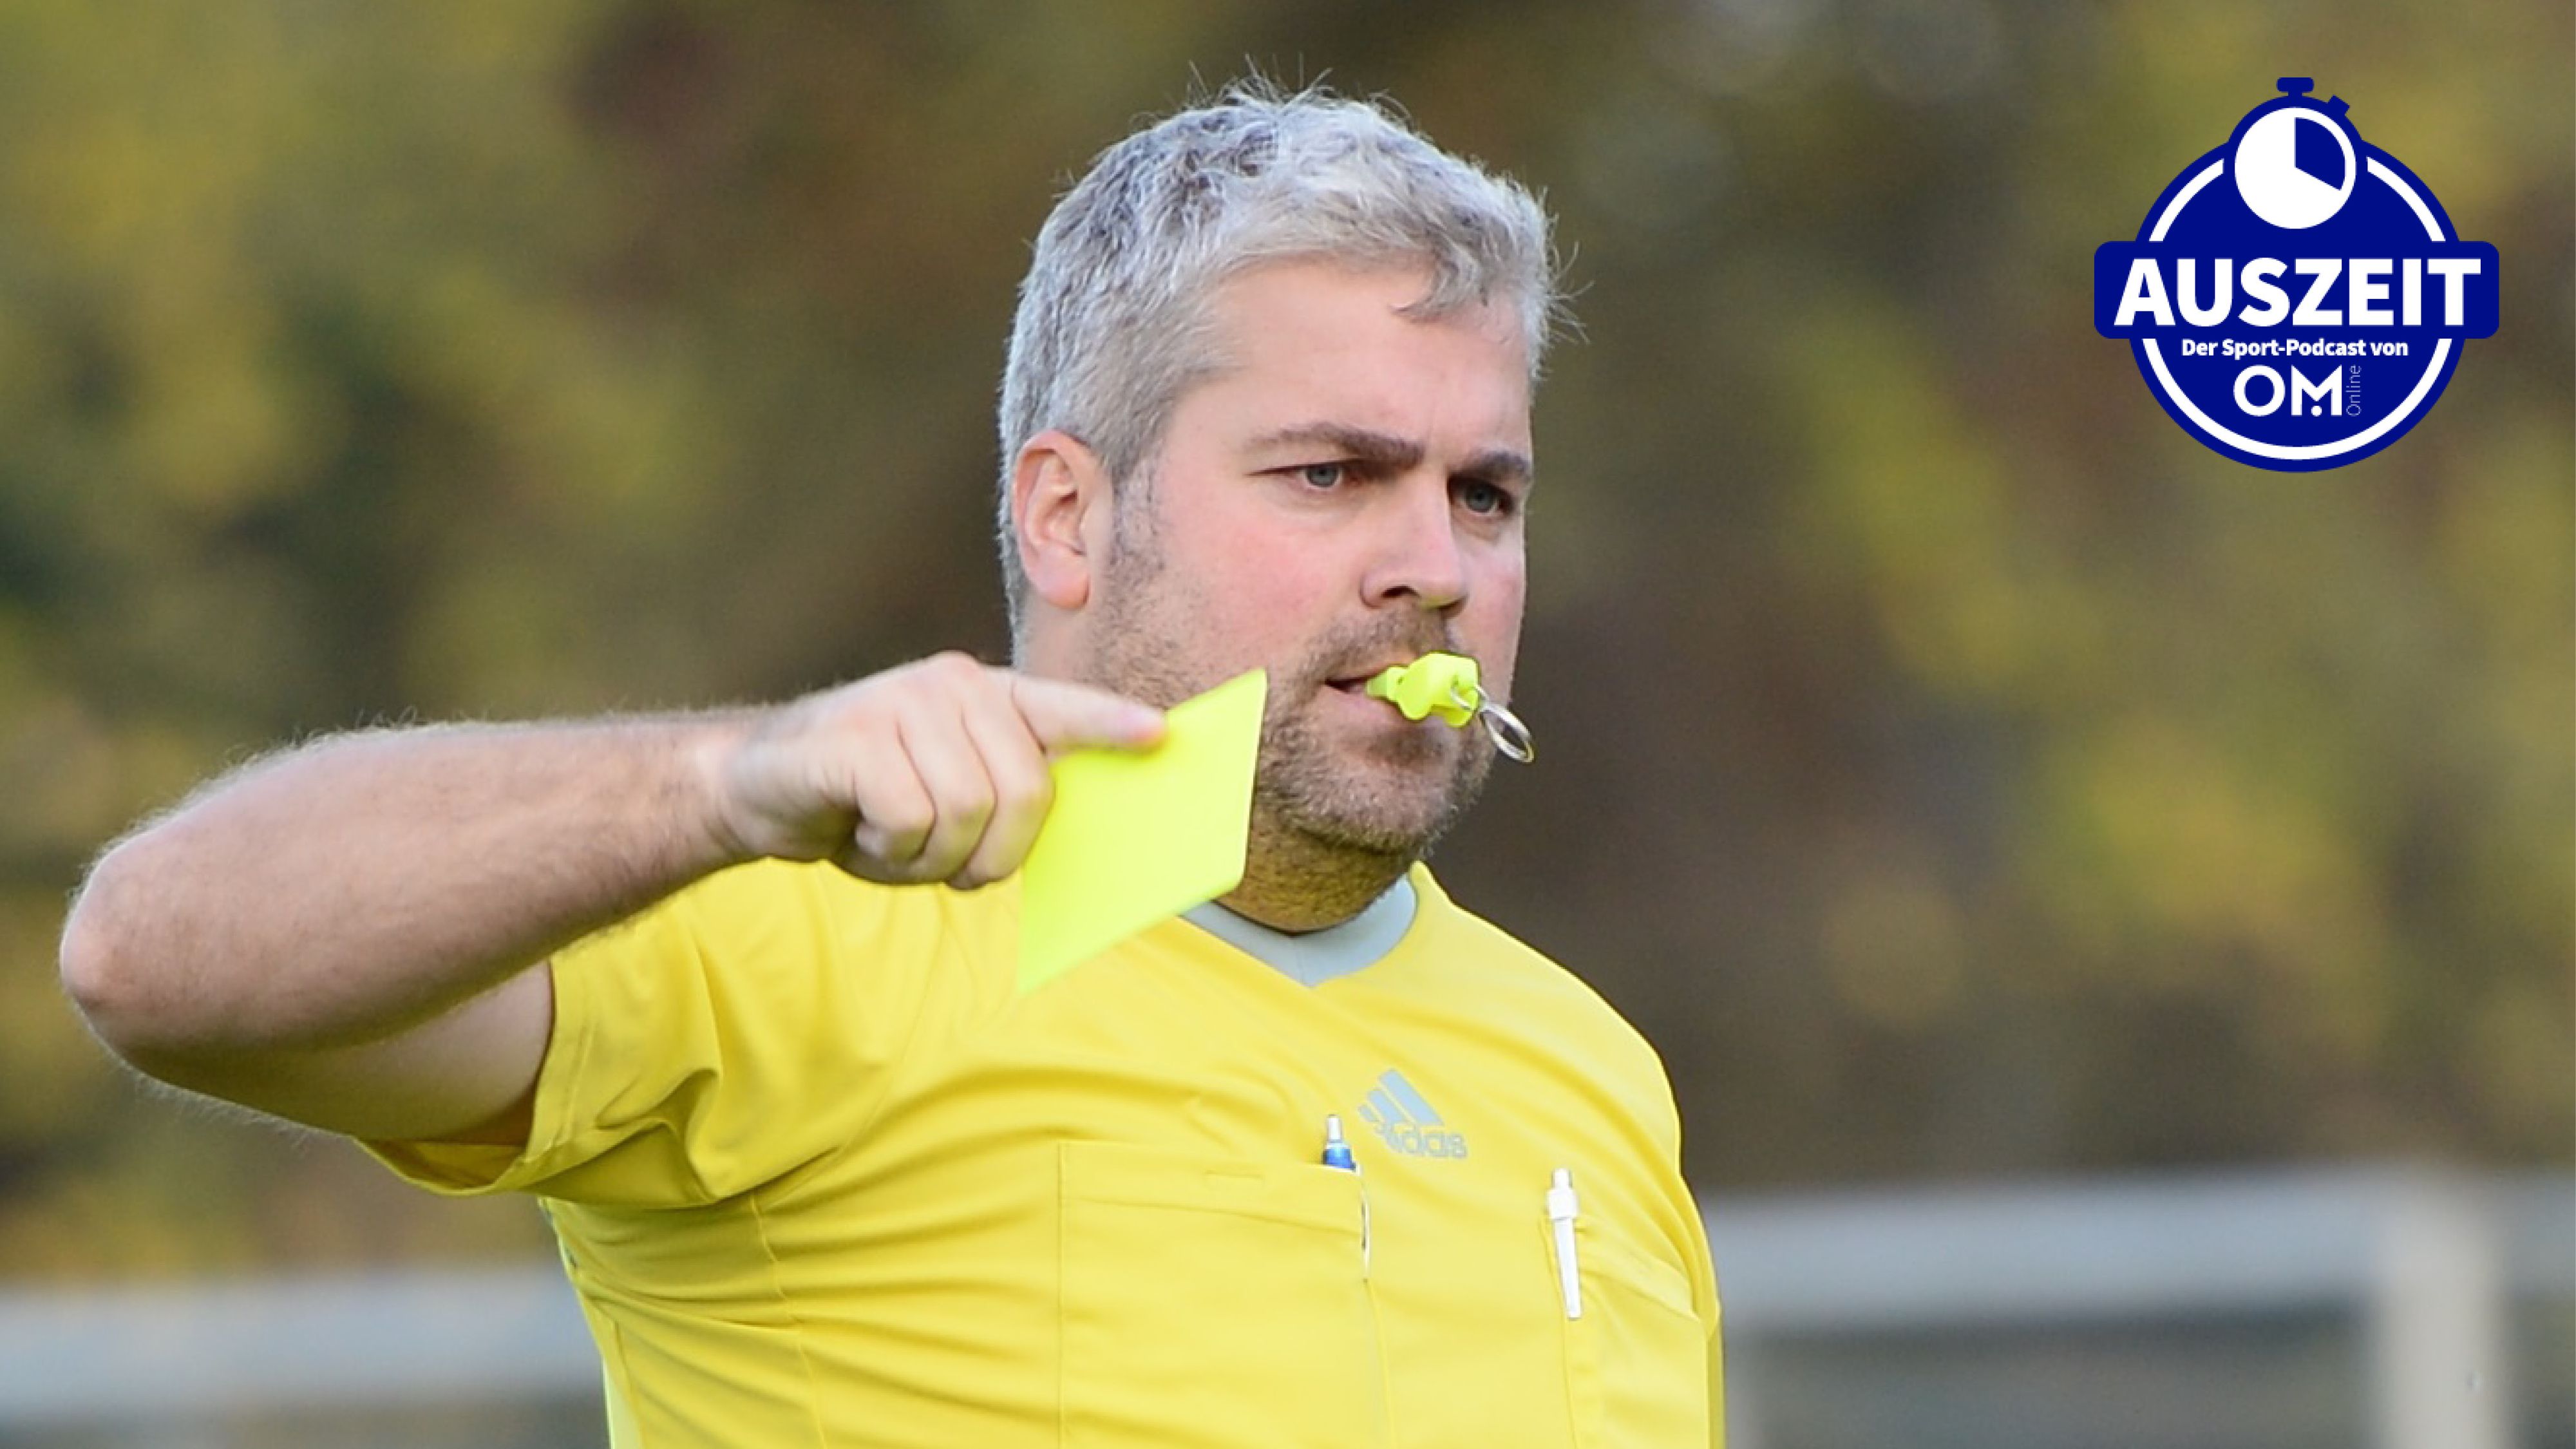 Souveräner Referee: Dominik Möller während der Kreisliga-Partie zwischen Emstek und Cappeln Ende Oktober 2022. Foto: Langosch